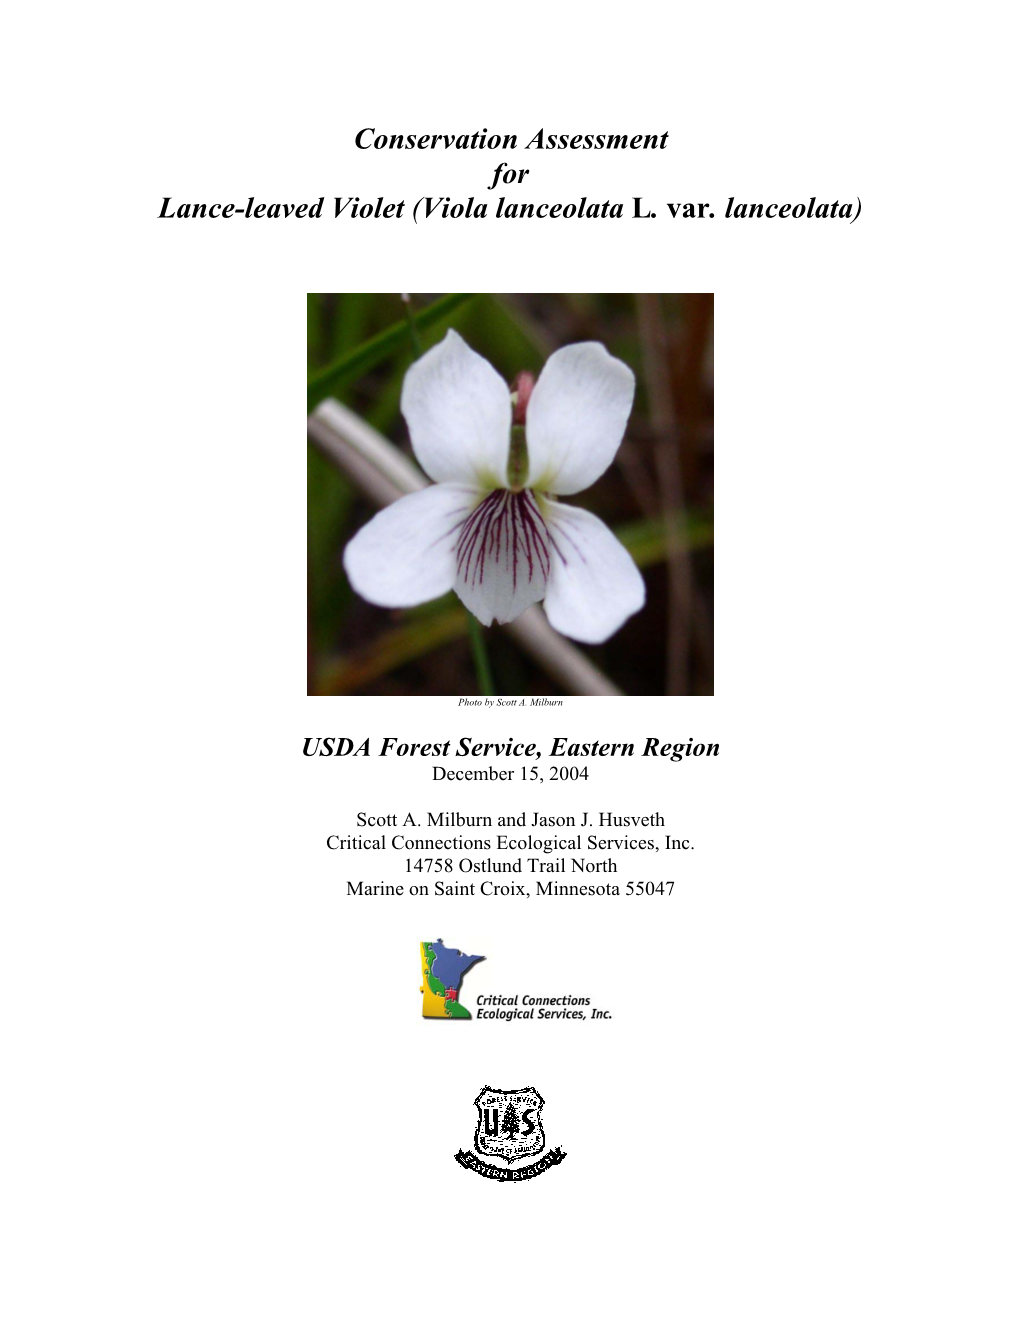 Lance-Leaved Violet (Viola Lanceolata L